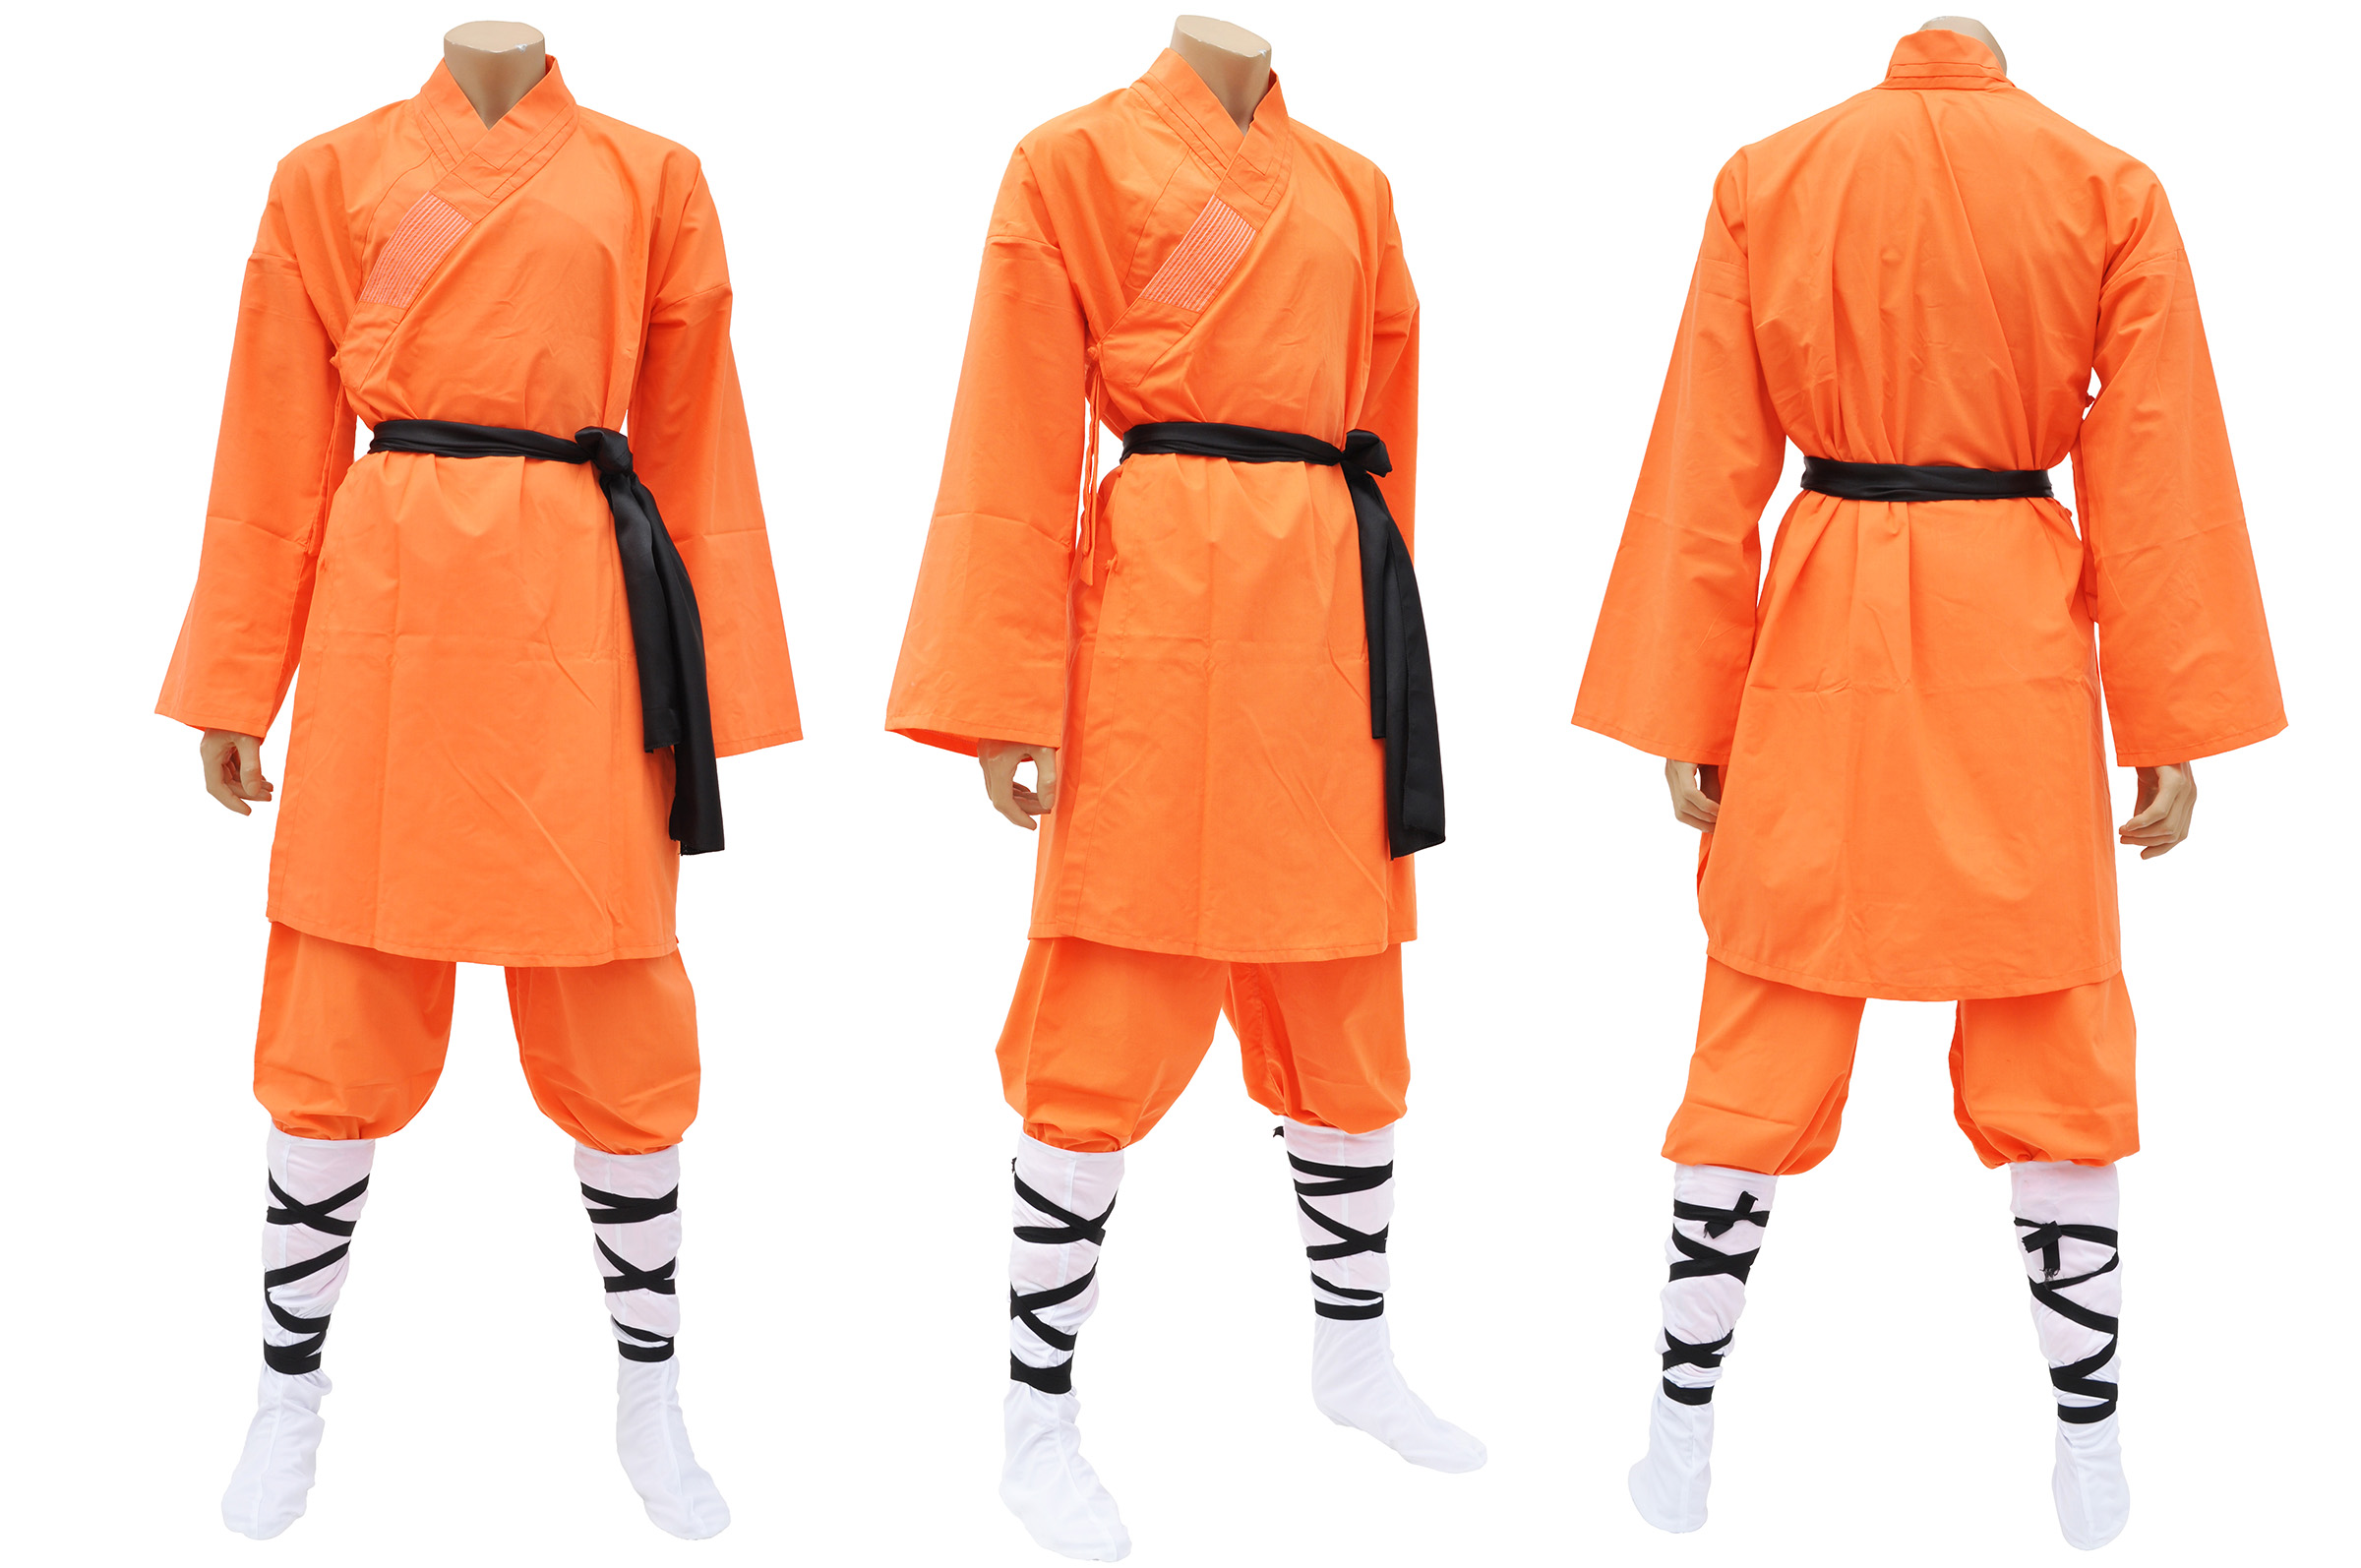 Shaolin Uniform 102